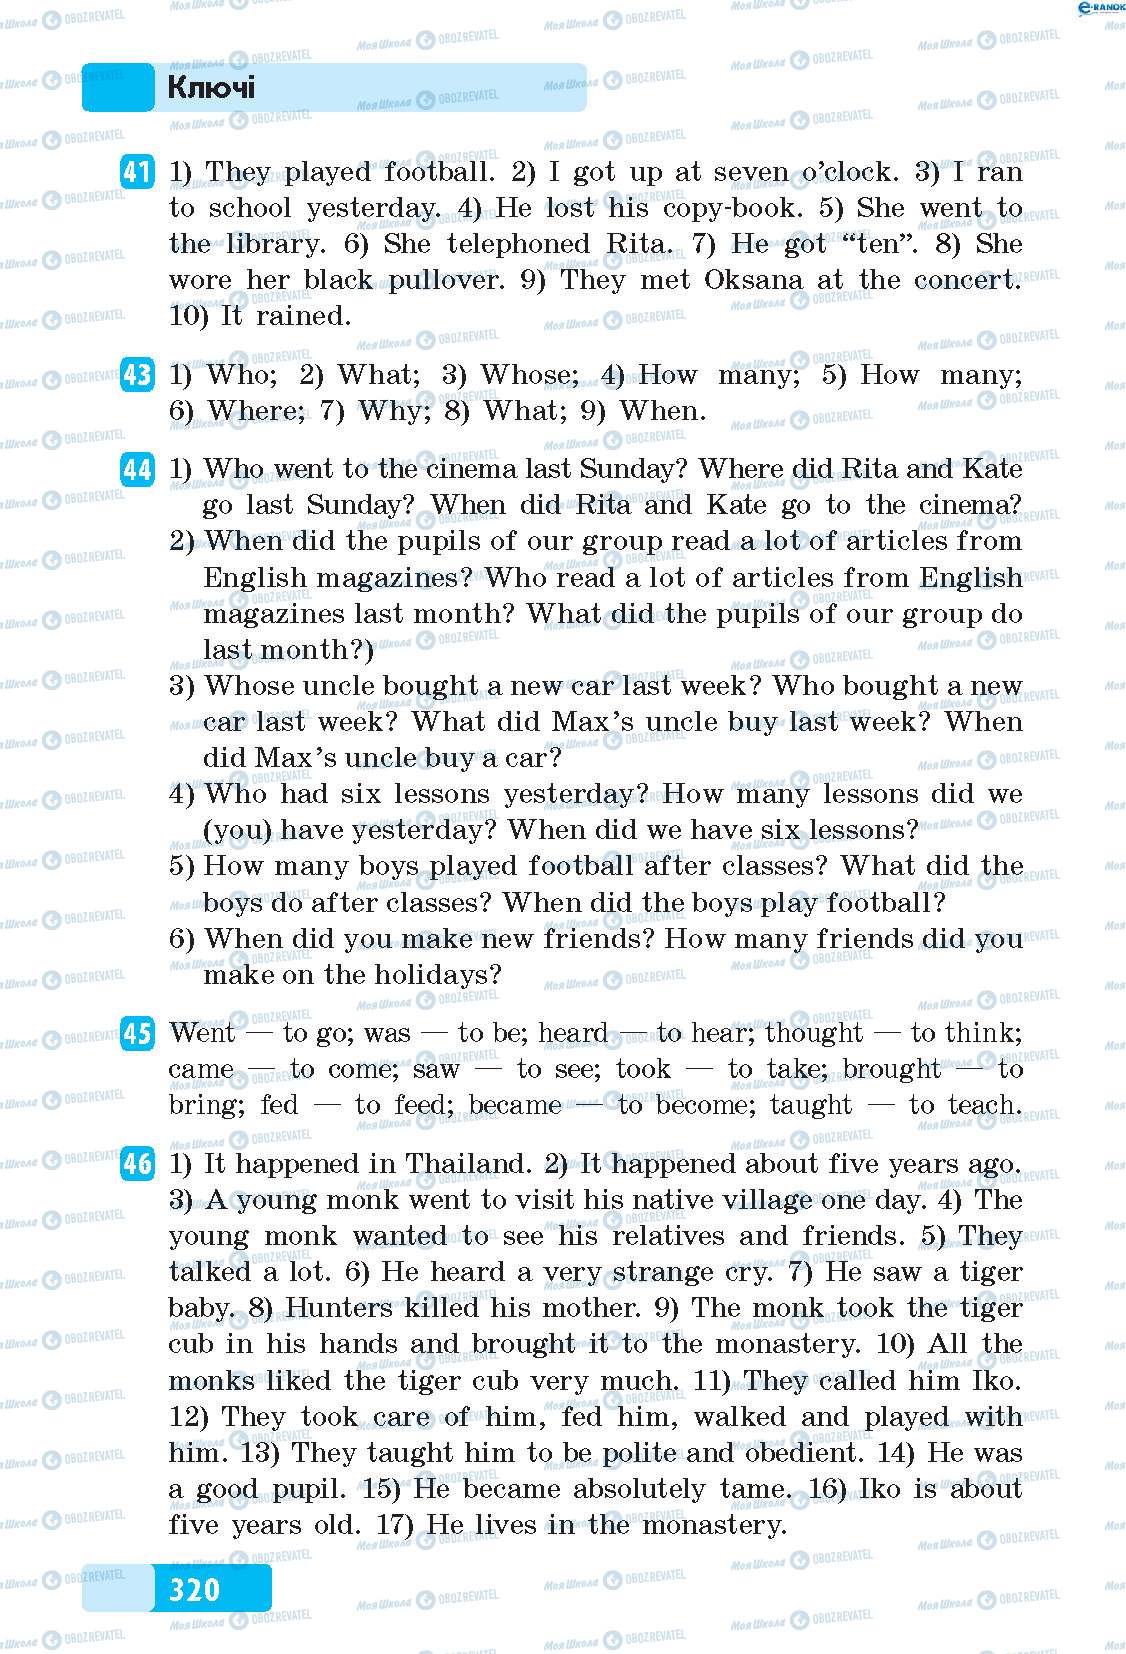 ГДЗ Англійська мова 5 клас сторінка 41-46